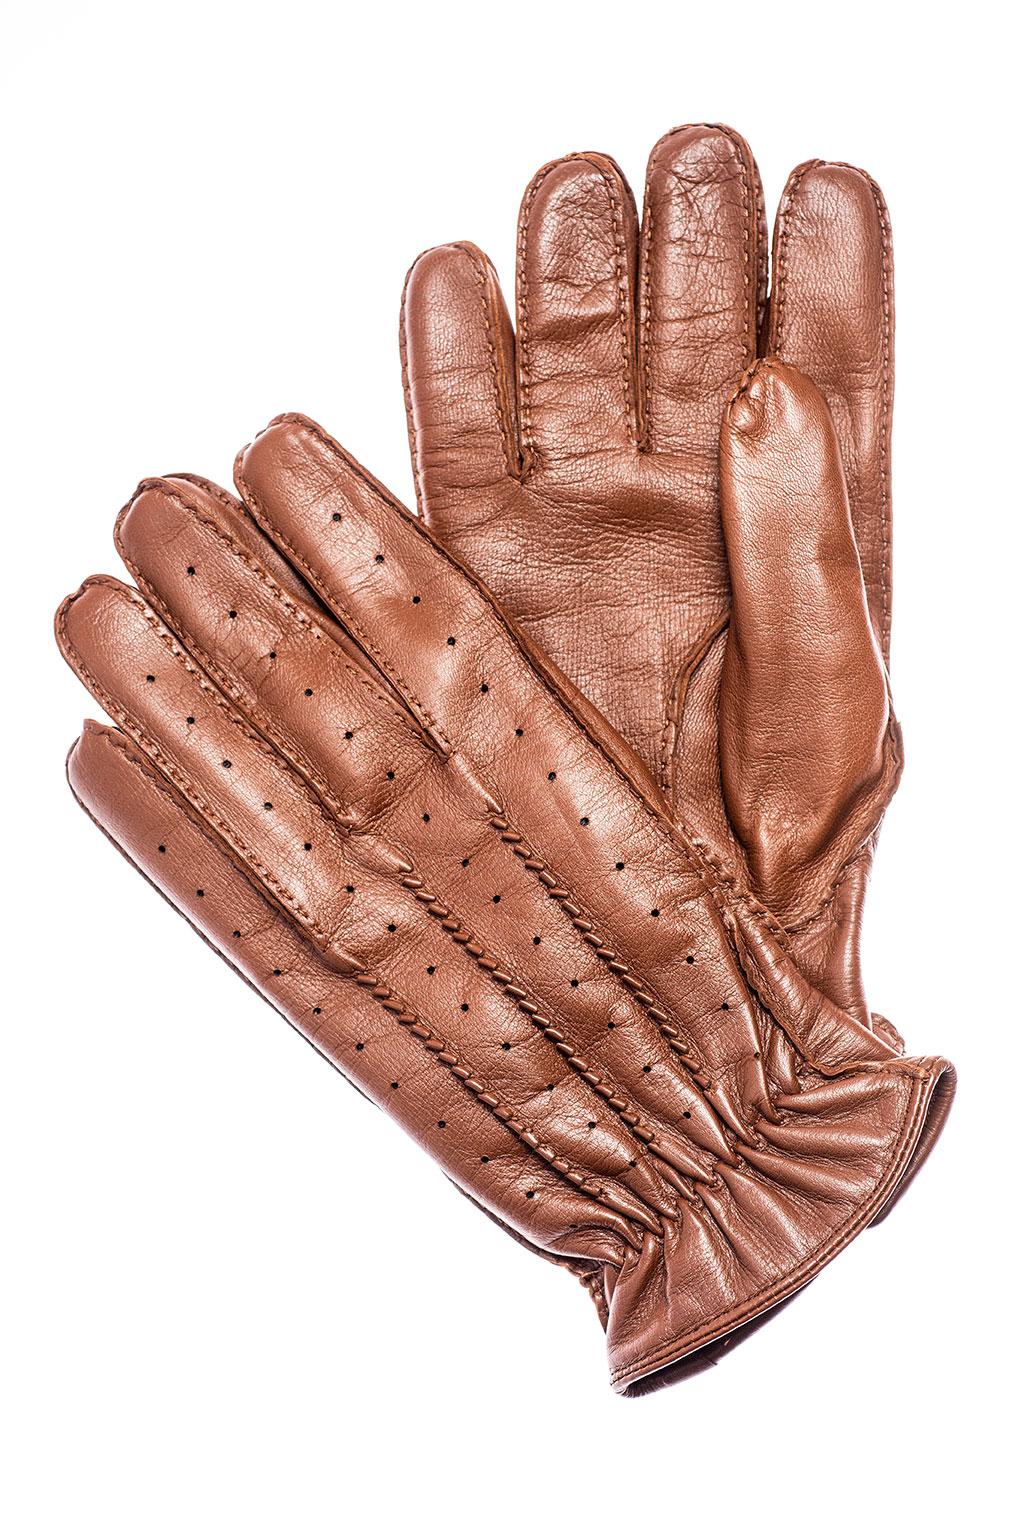 Mănuși din piele nappa de ovină, căptușite, pentru bărbați M209 Coniac 2020-2021